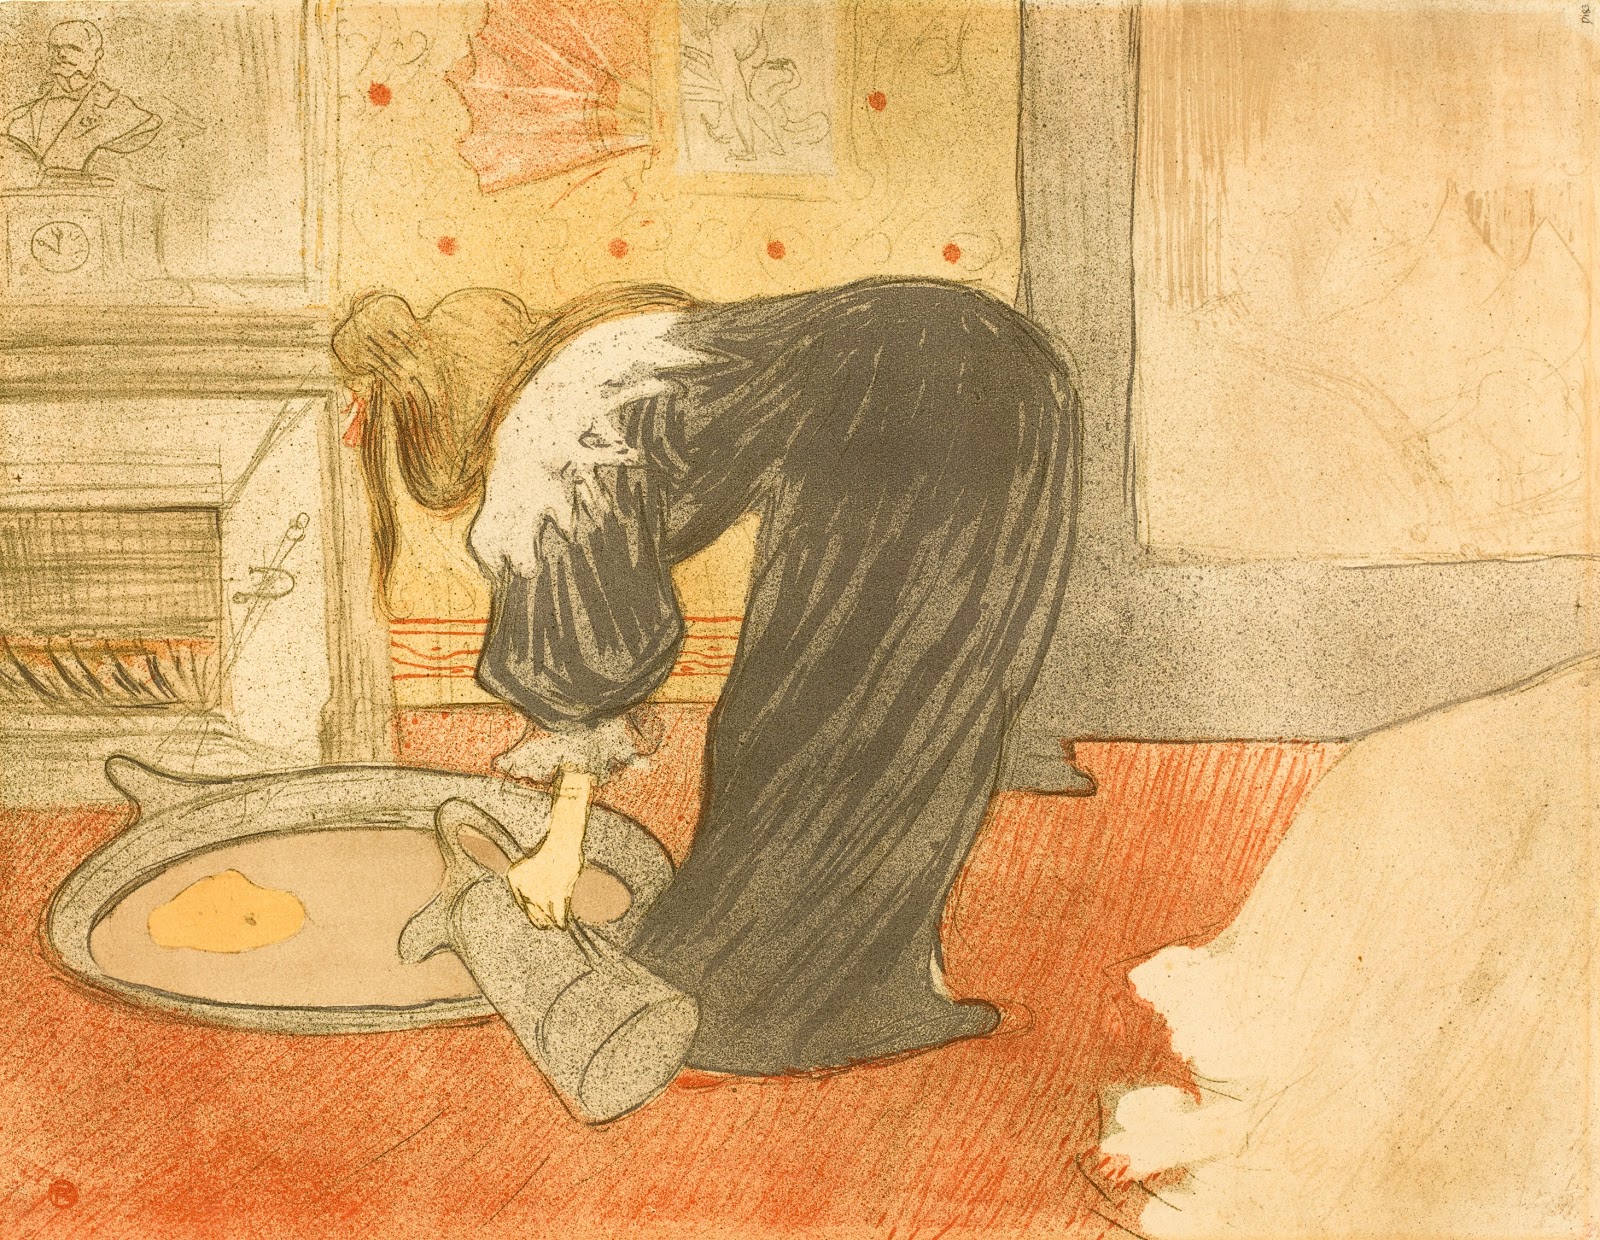 Henri+de+Toulouse+Lautrec-1864-1901 (147).jpg